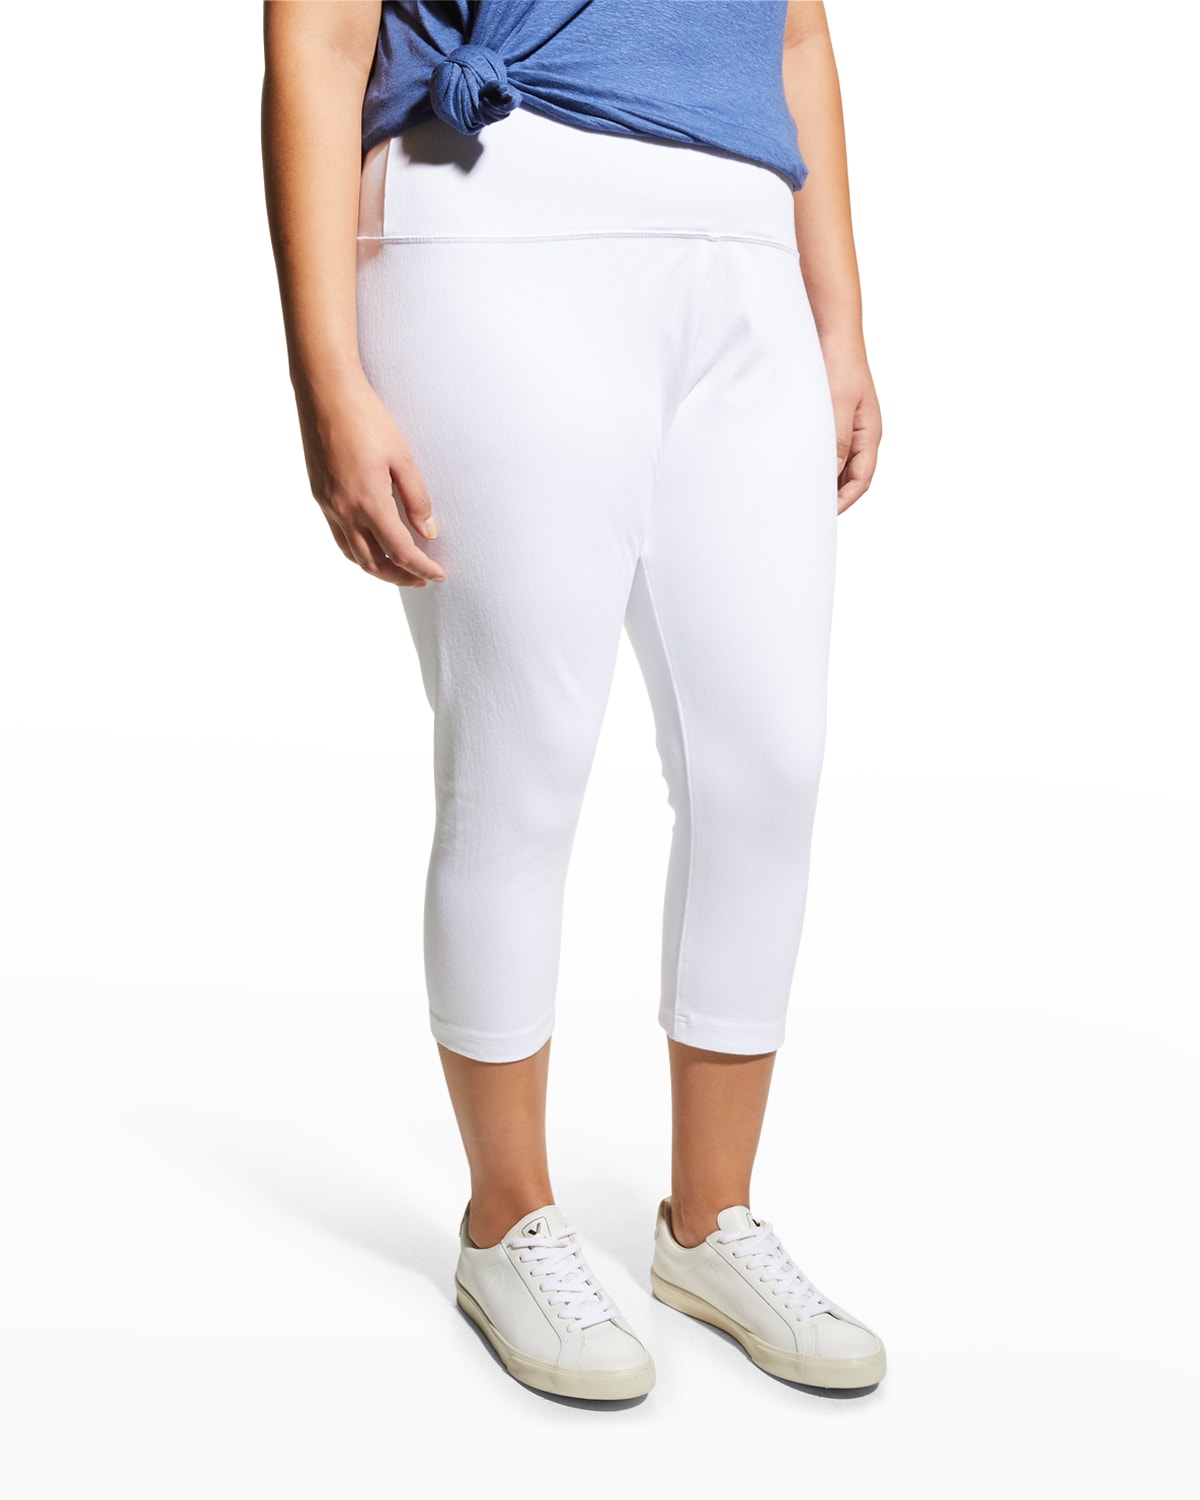 Lyssé Plus Size Stretch Denim Capri Pants In White